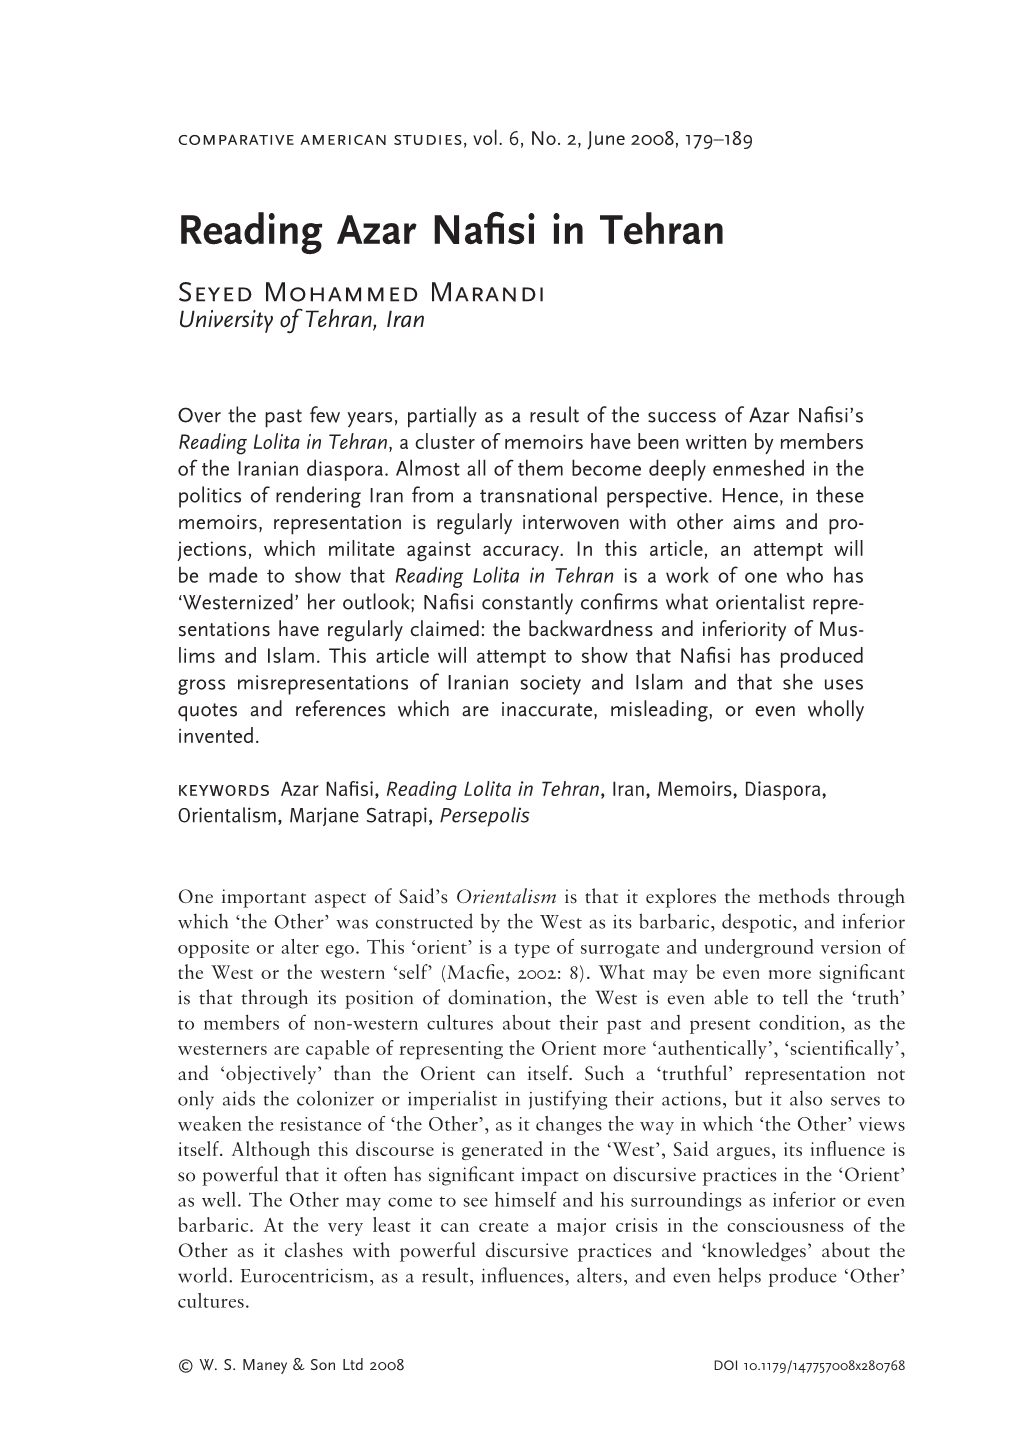 Reading Azar Nafisi in Tehran 181